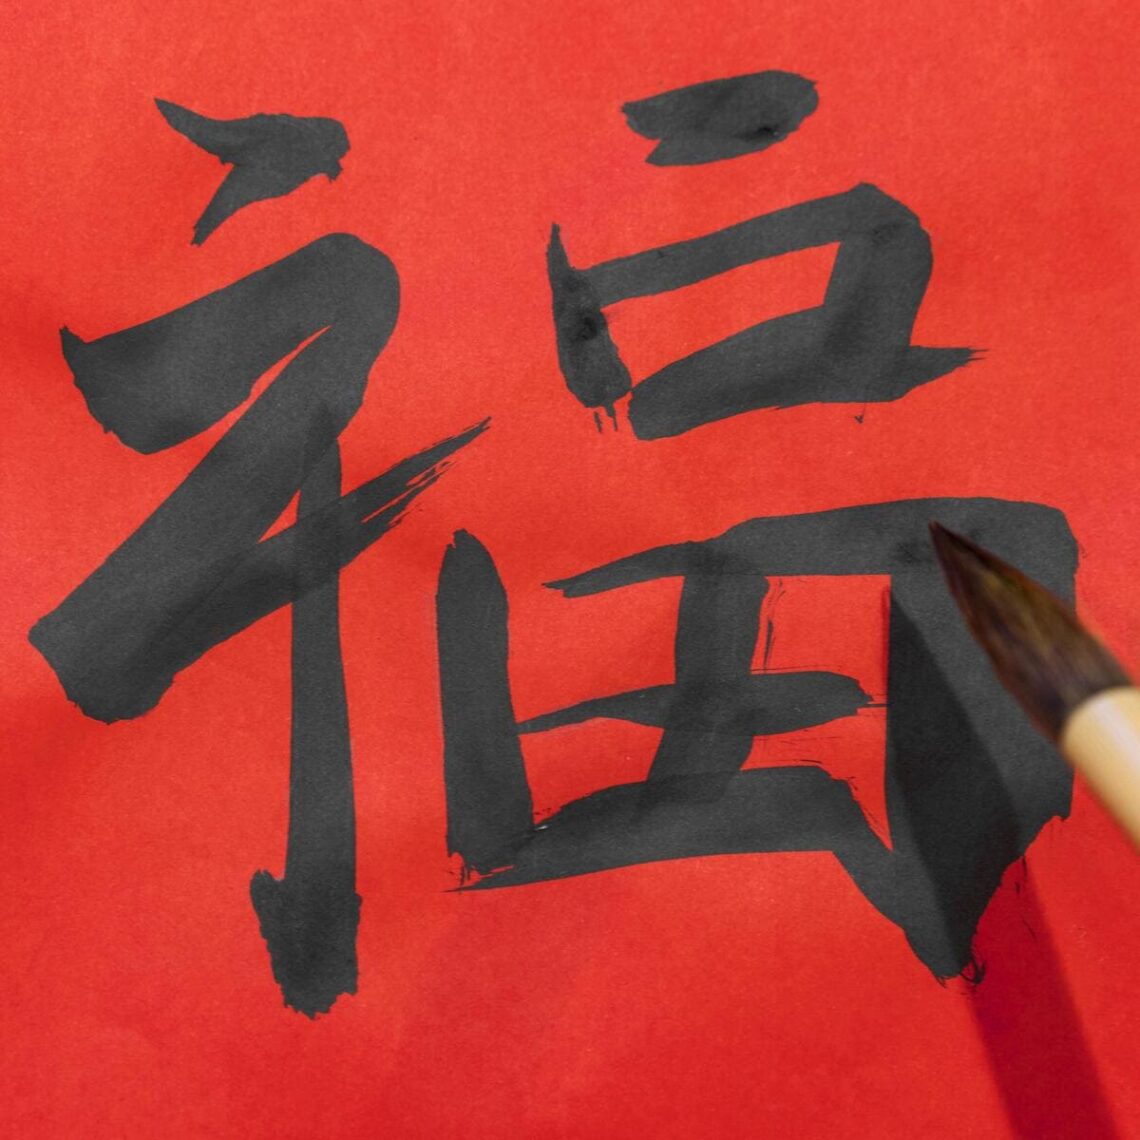 duży ładny znak japoński, napisany nie jakoś super, ale kto się zorientuje w sumie